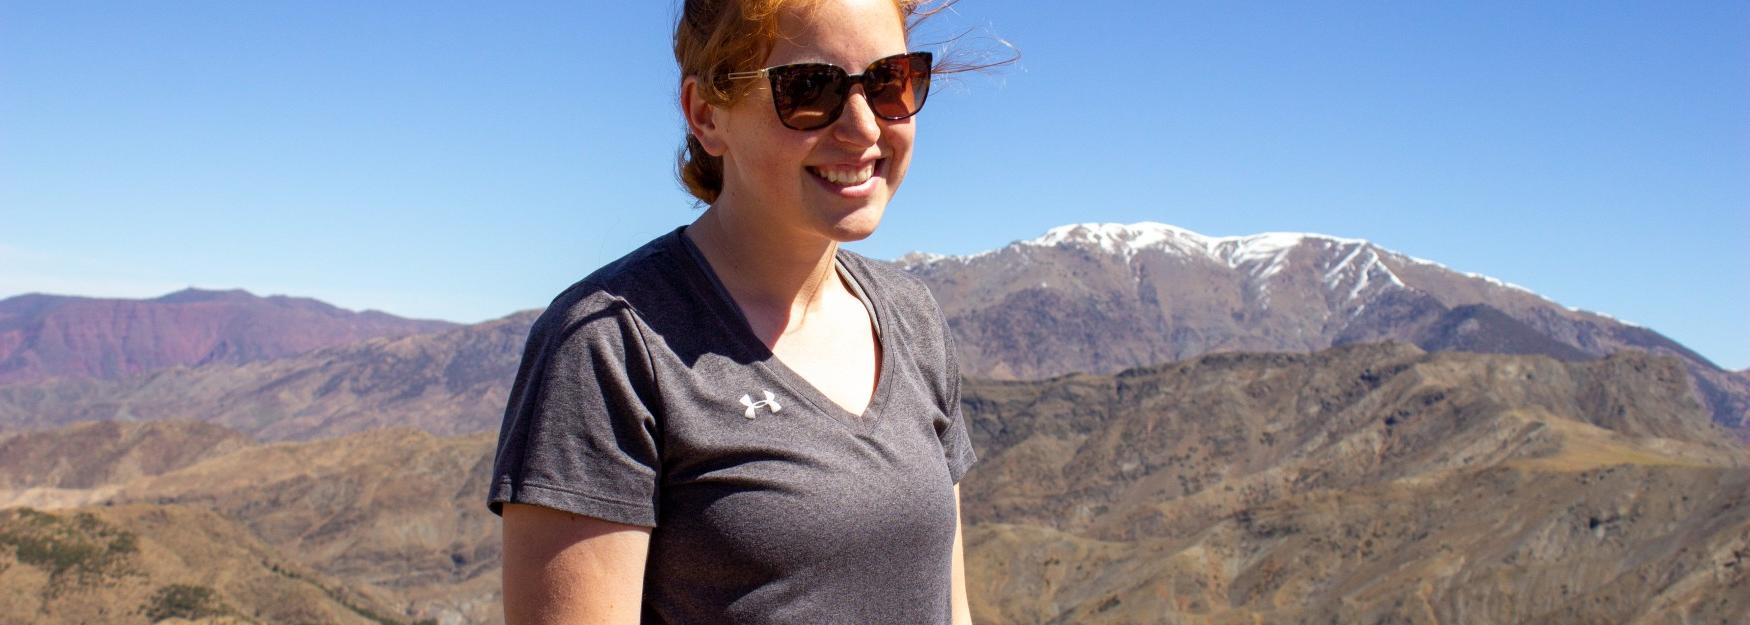 丽贝卡·克雷塞斯基站在撒哈拉沙漠的背景下